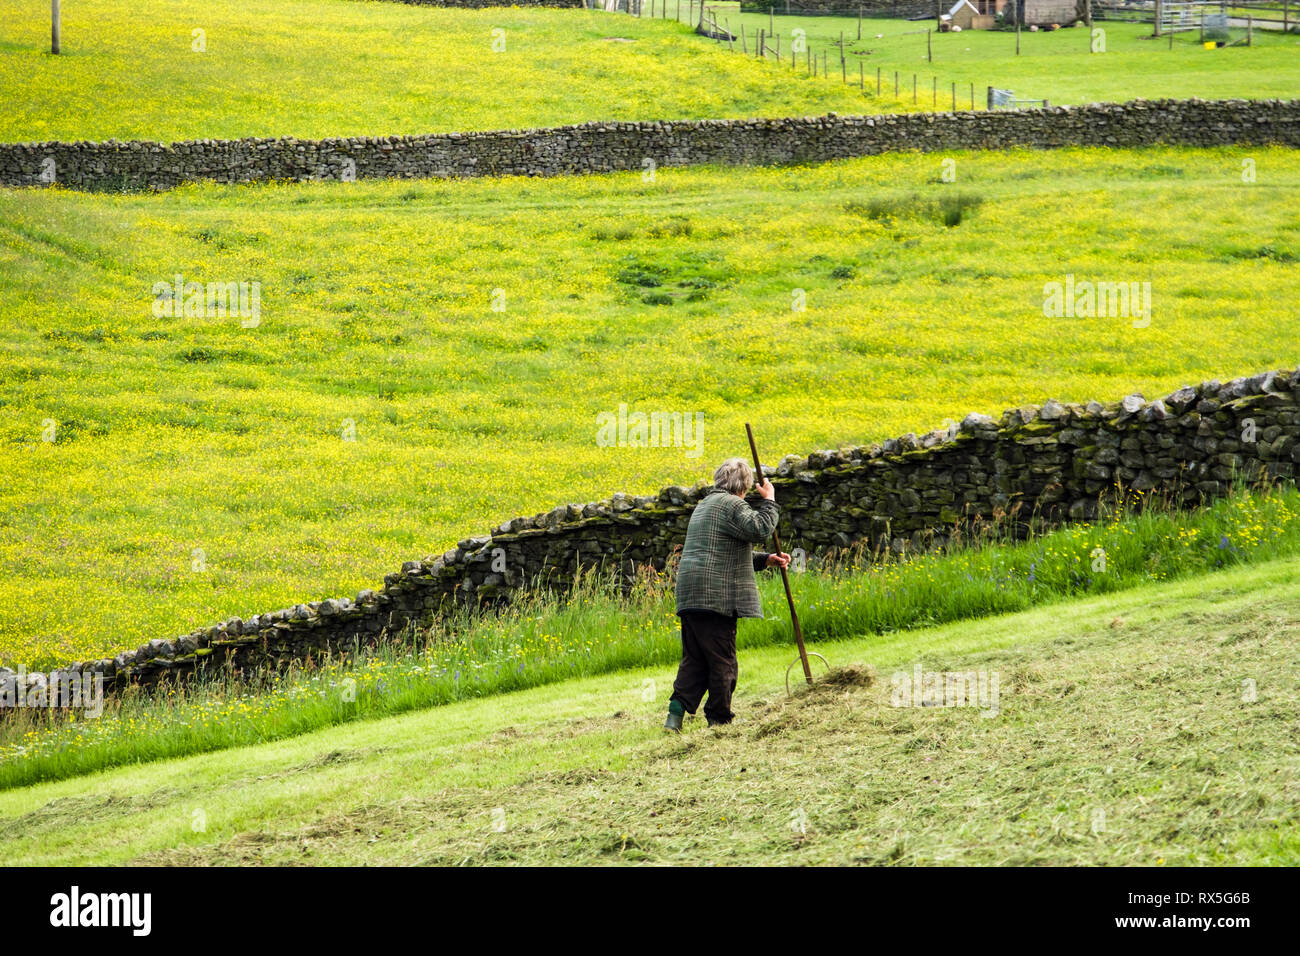 Un agricoltore femmina che gira fieno a mano rastrello in un campo in estate. Thwaite Swaledale Yorkshire Dales National Park North Yorkshire Inghilterra Regno Unito Gran Bretagna Foto Stock